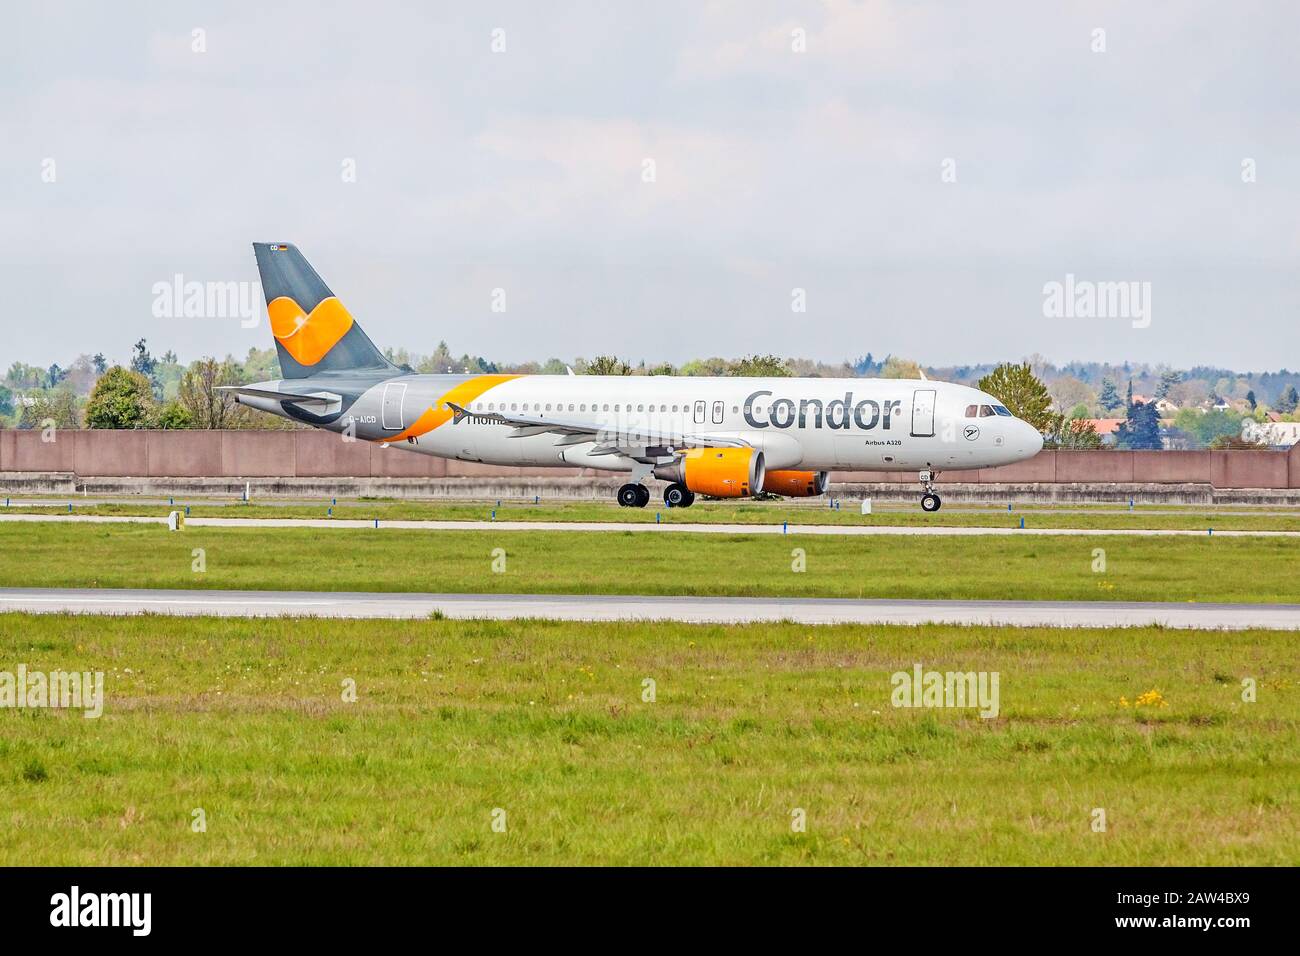 Stoccarda, Germania - 29 aprile 2017: Aeromobile Airbus A320 da Condor a terra (aeroporto di Stoccarda) prima del decollo - prato verde con recinzione di fronte Foto Stock